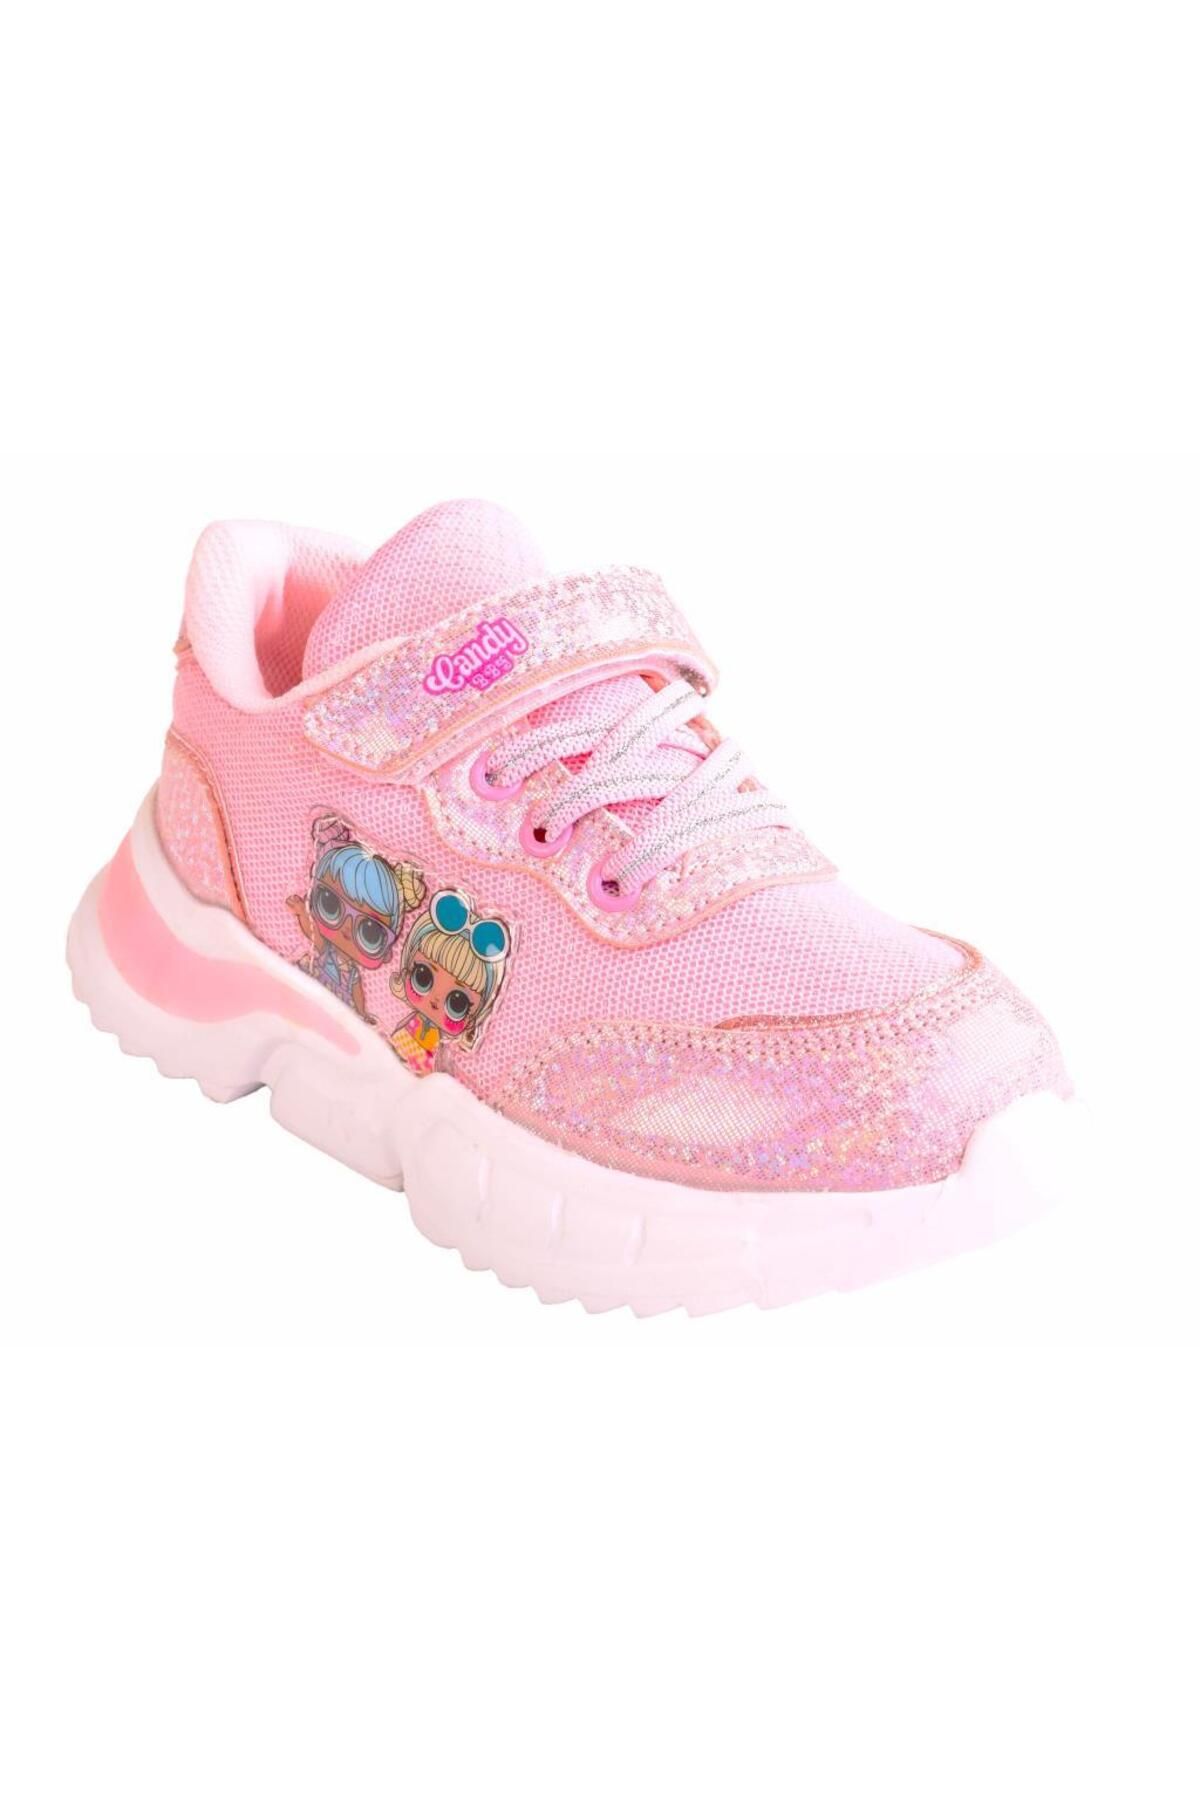 Lol Kız Çocuk Hafif Taban Pembe&Lila Spor Ayakkabı Sneakers